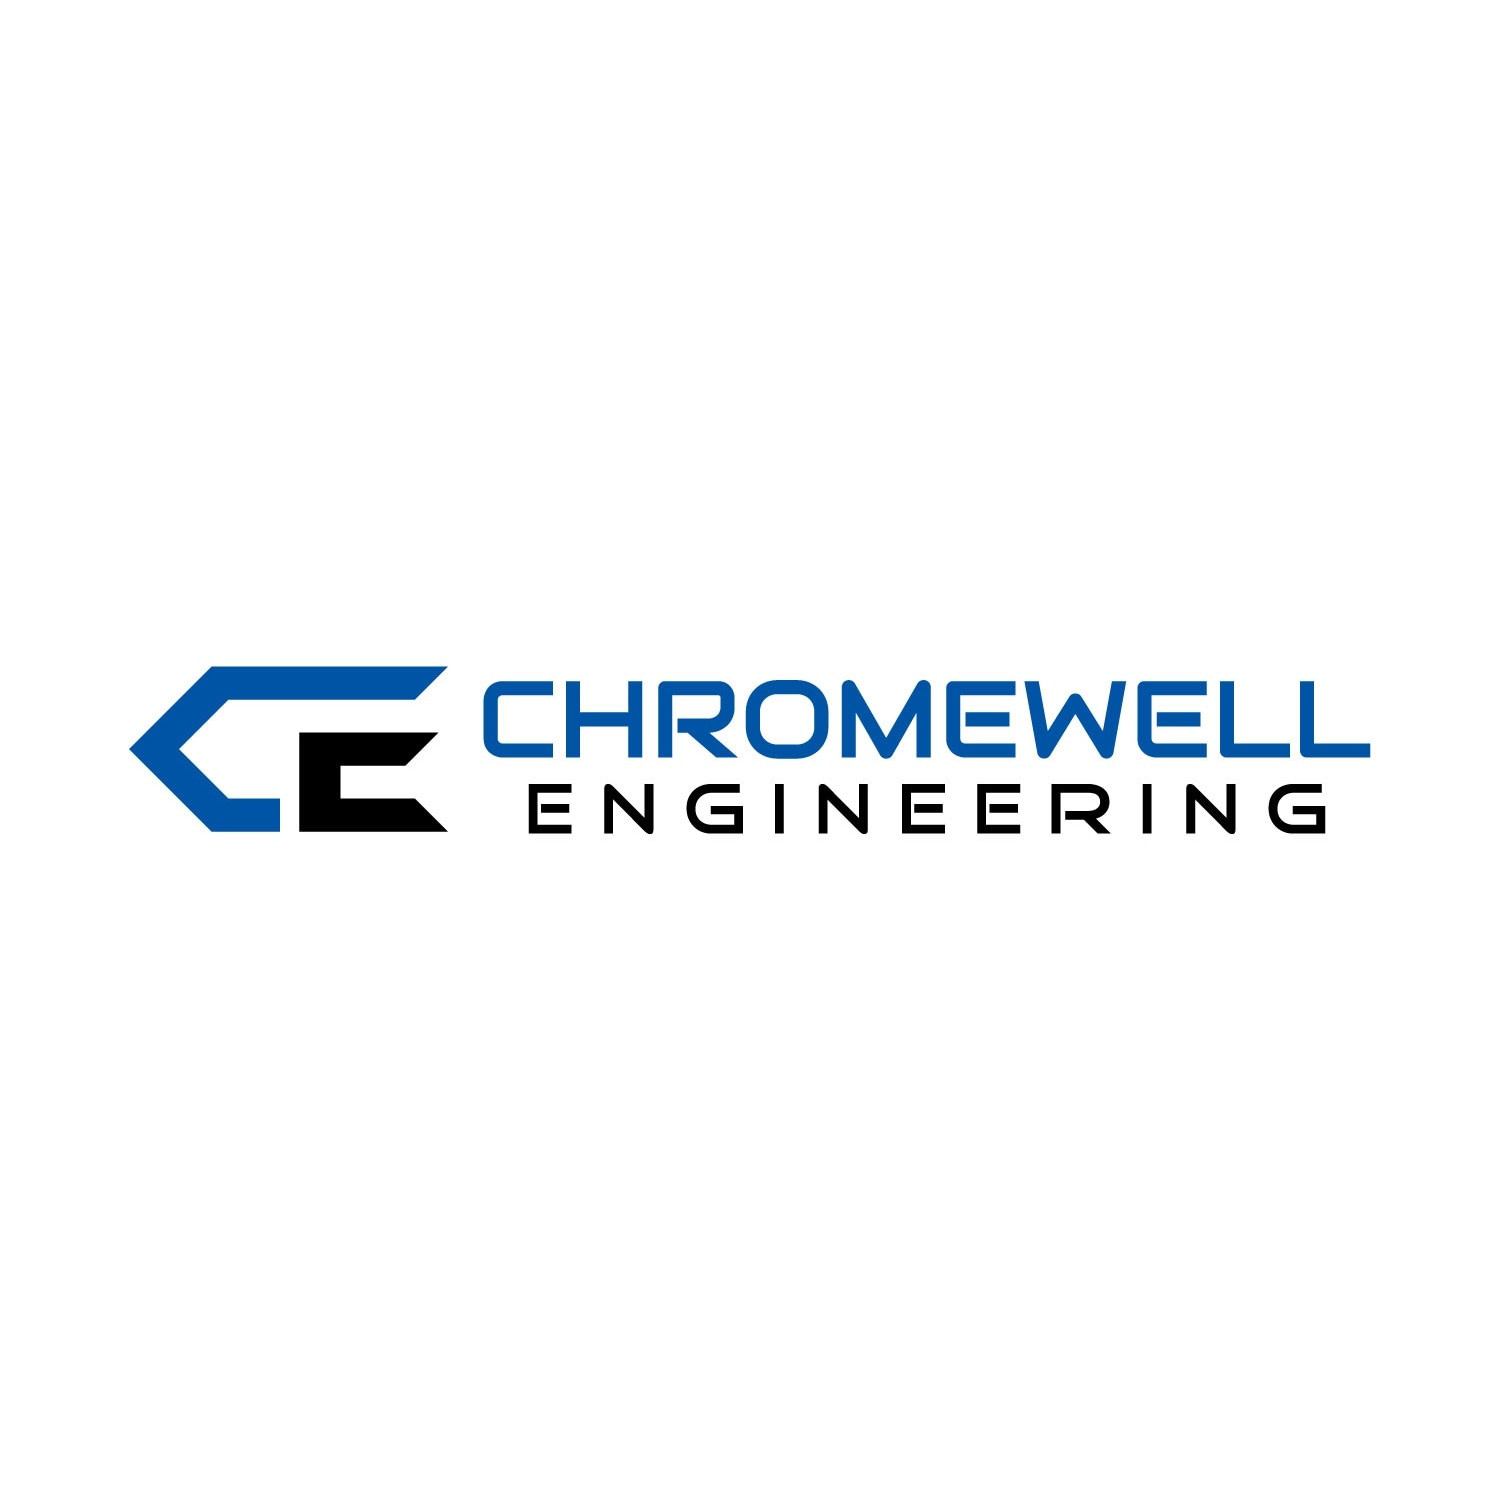 Chromewell